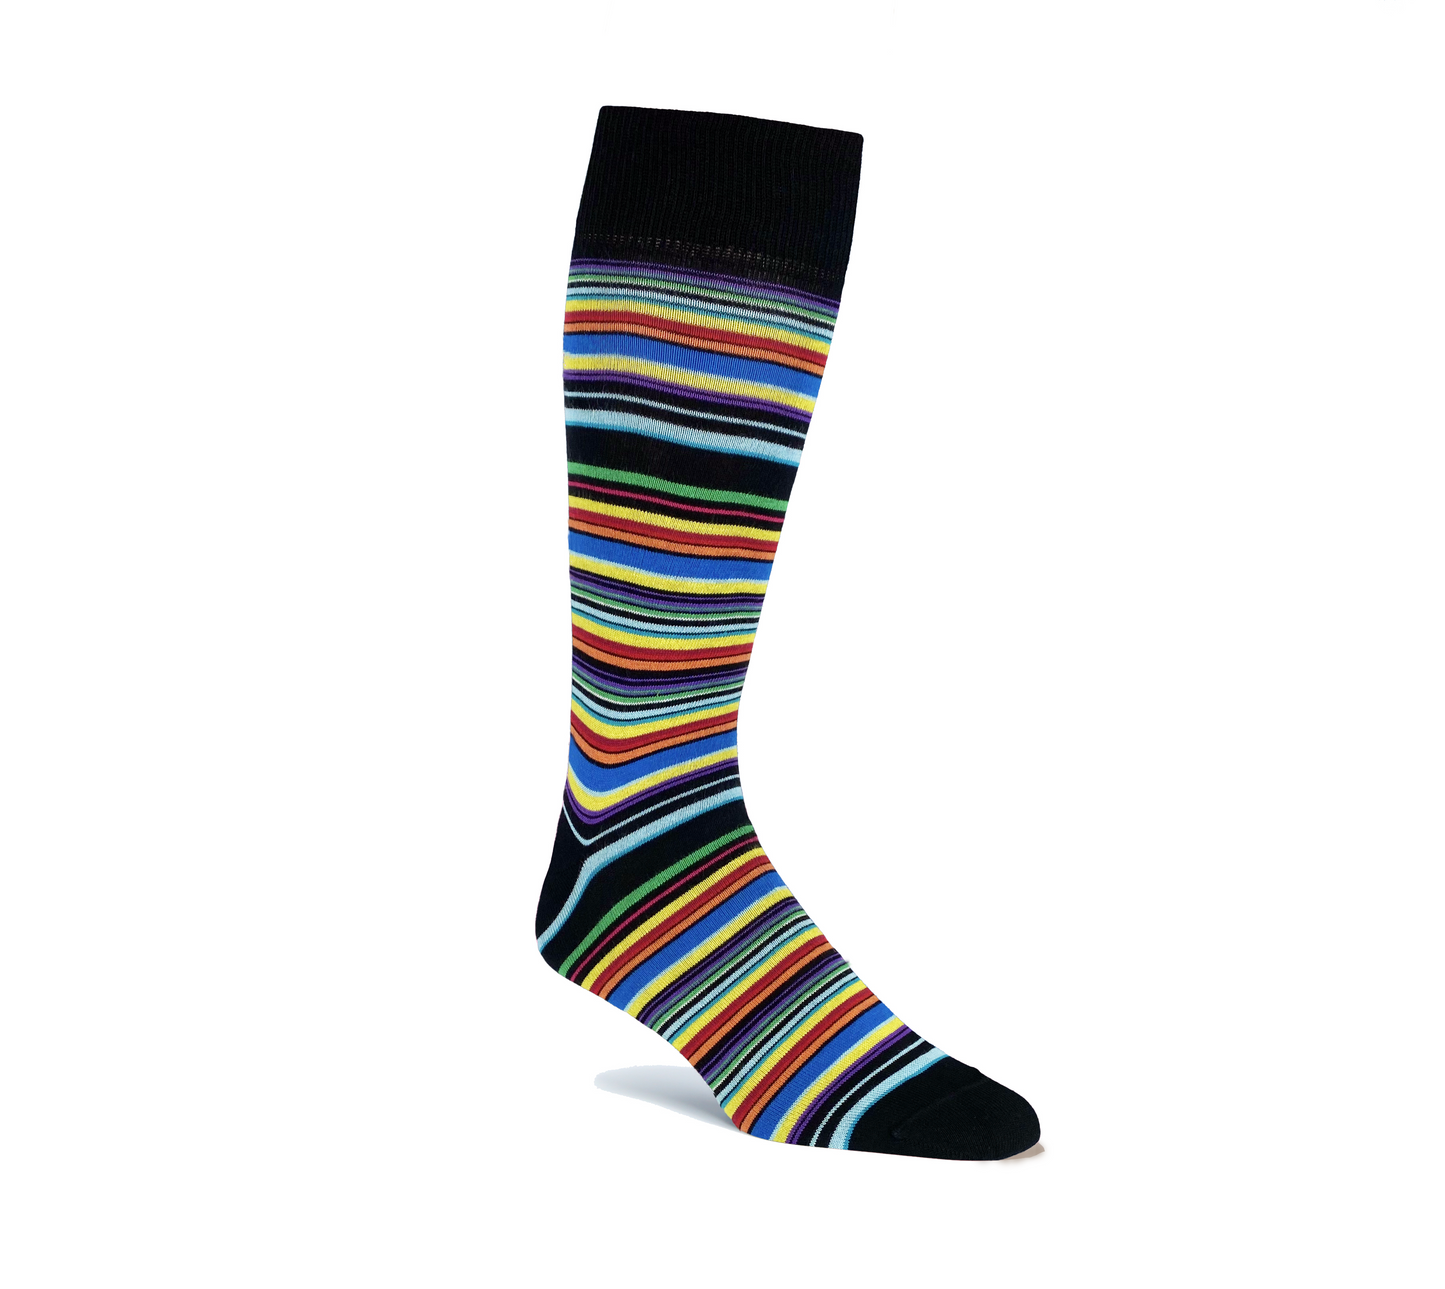 Awning Stripe Sock